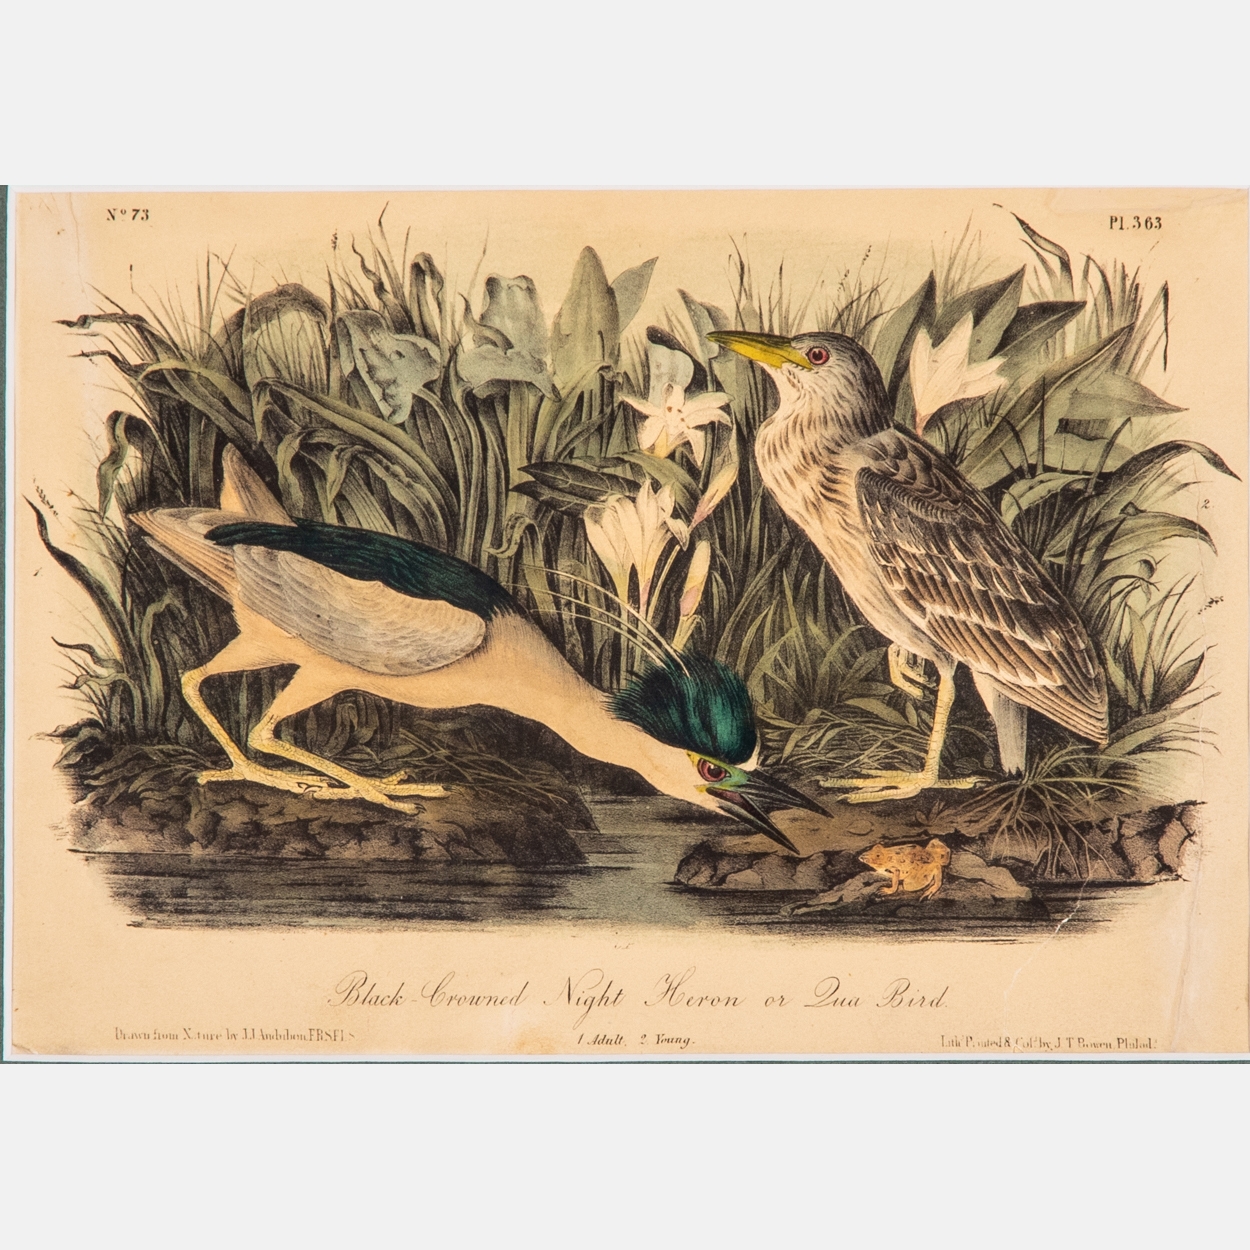 After John James Audubon (1785-1851)Black-Crowned Night Heron or Qua Bird by John James Audubon, 1861